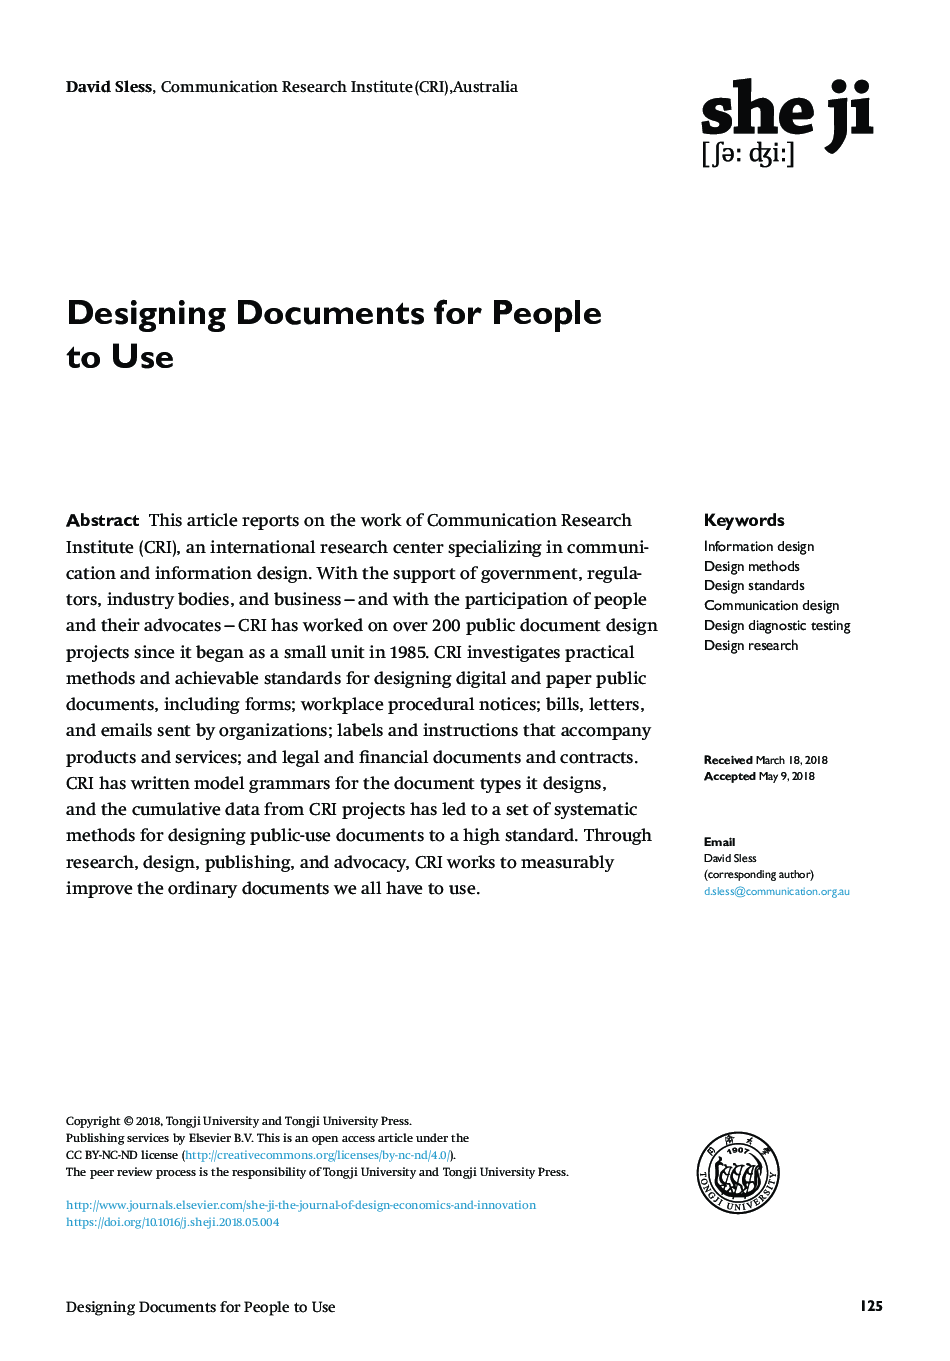 طراحی اسناد برای استفاده از افراد 